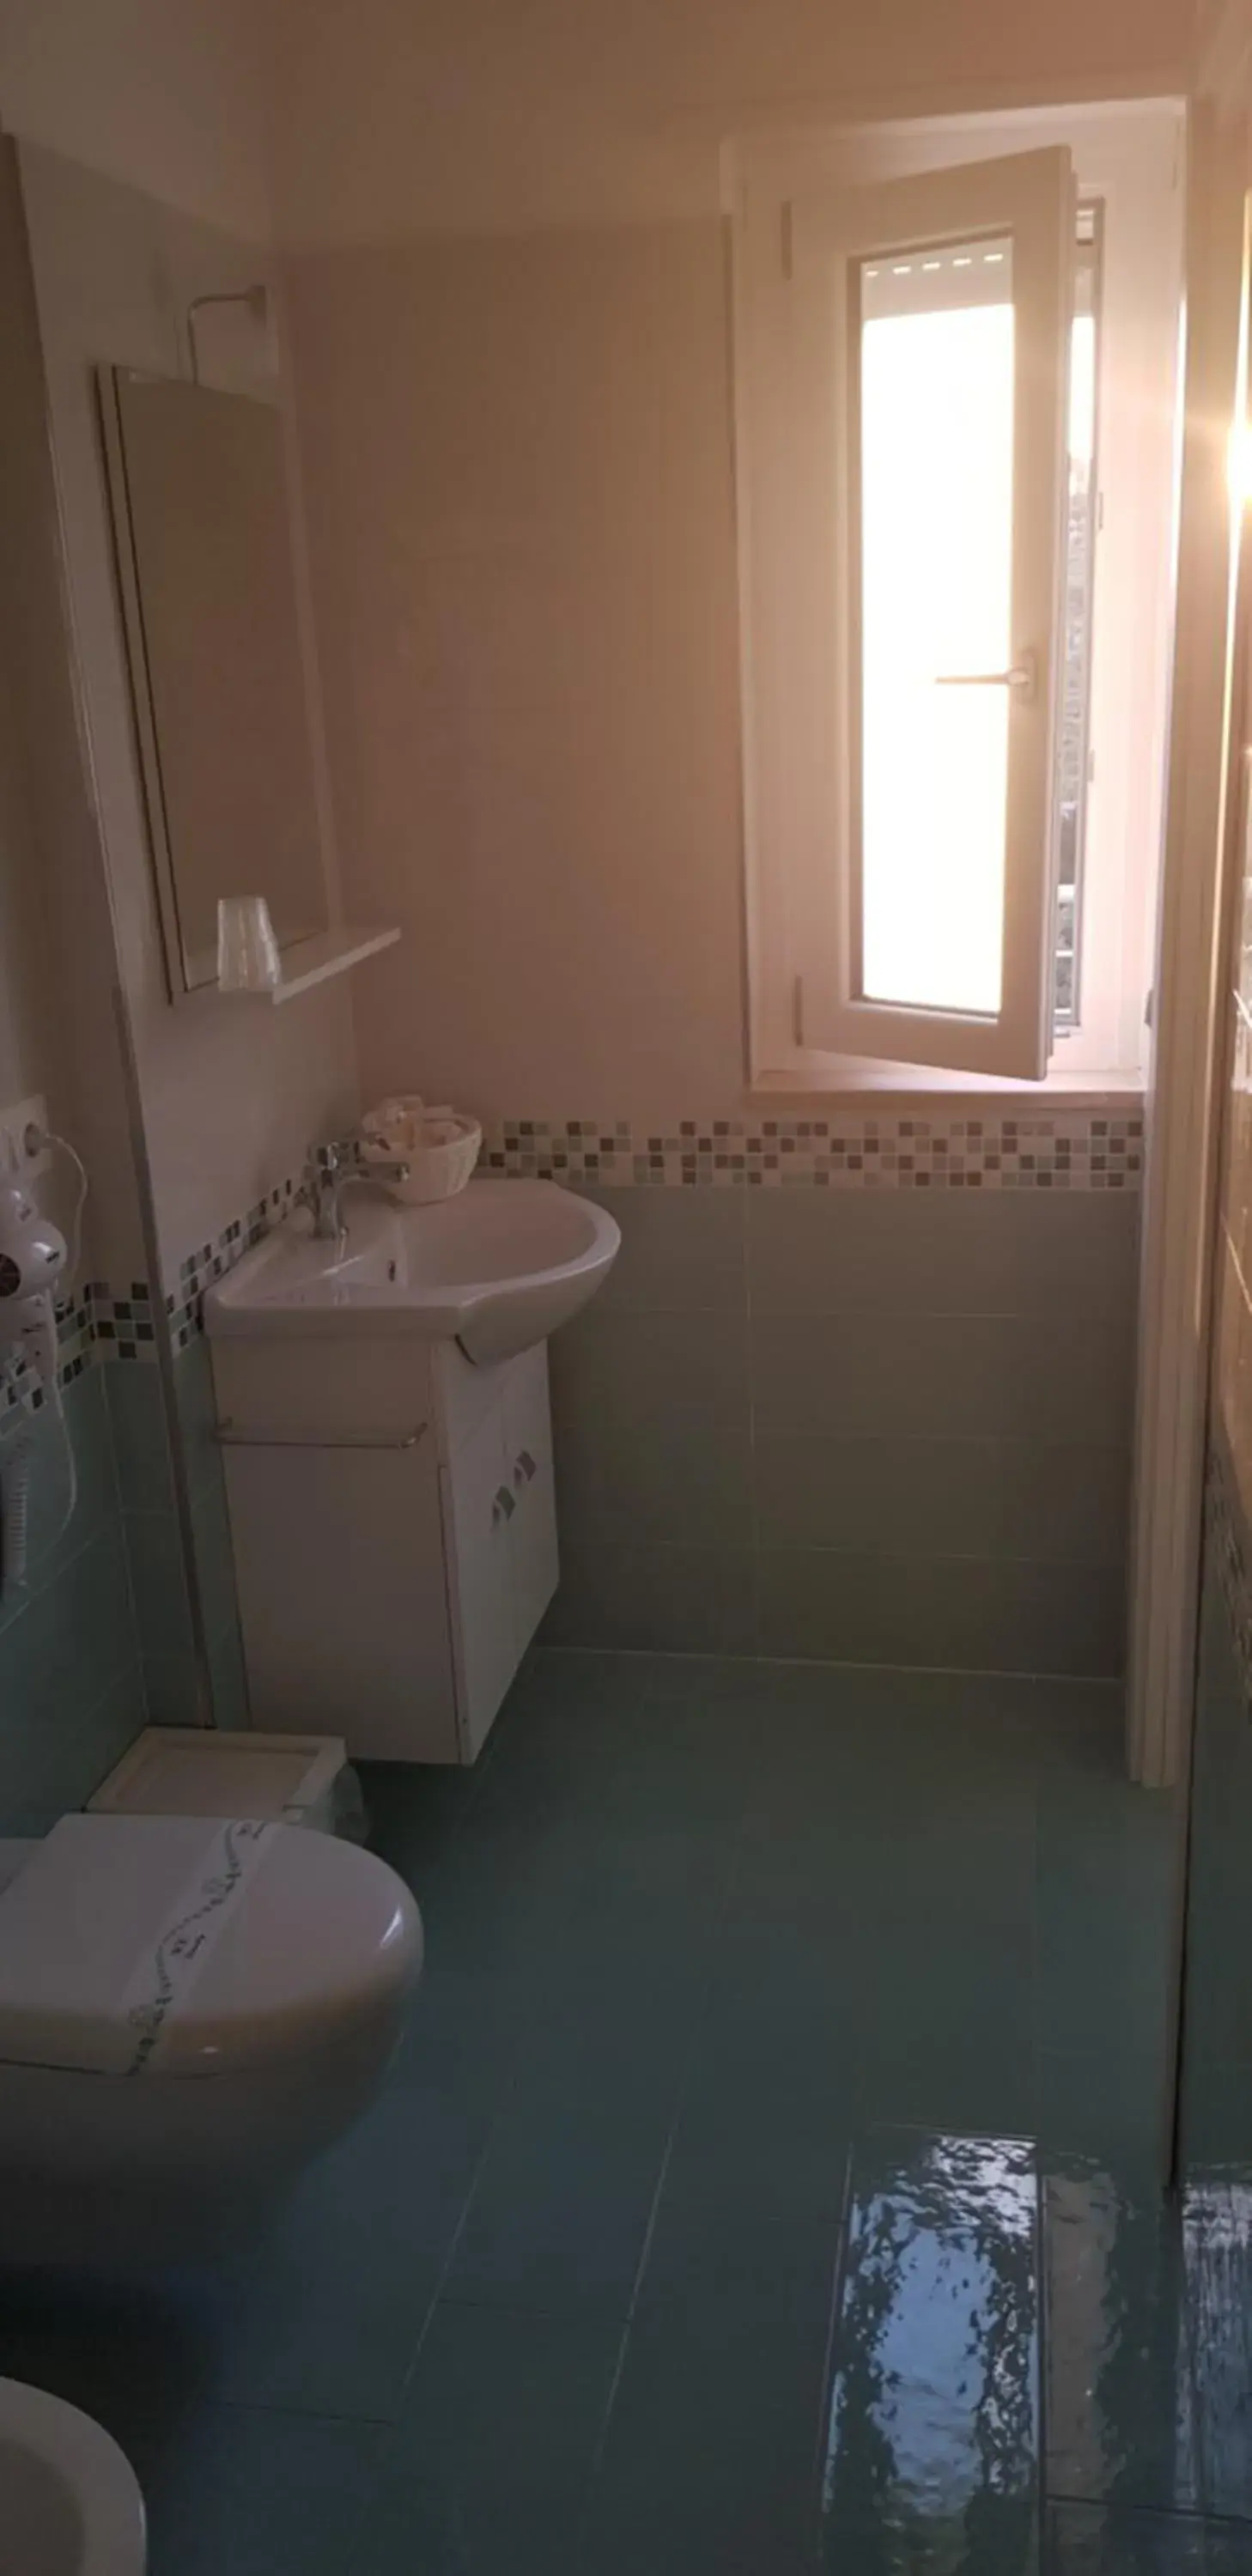 Bathroom in Stella Marina Agropoli